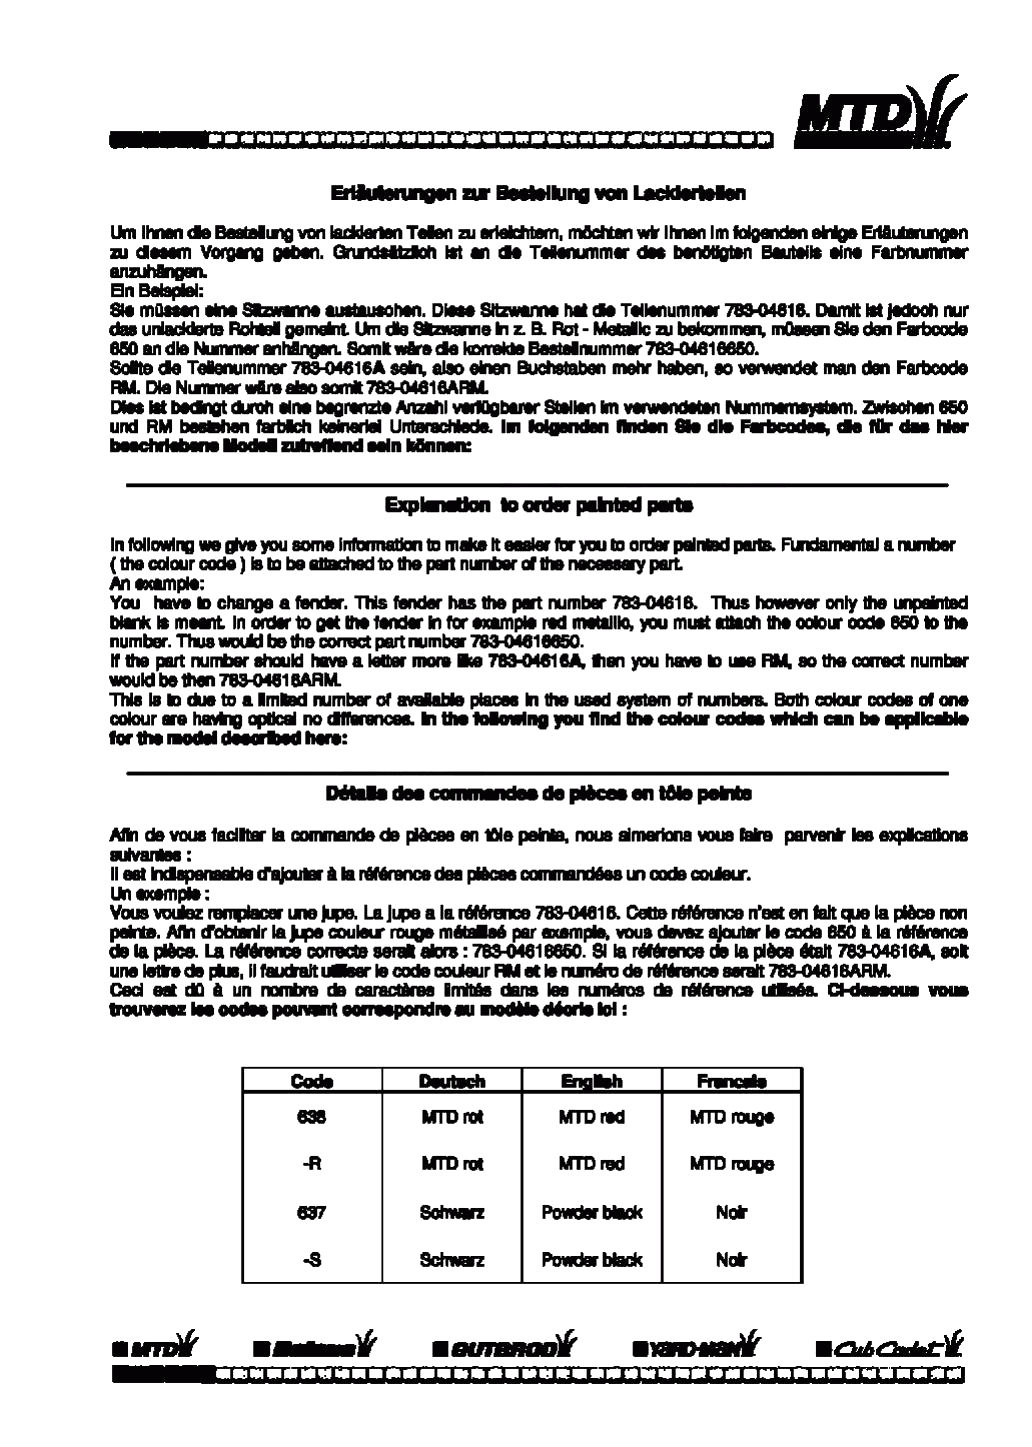 MTD Артикул 13BC451C600 (год выпуска 1998). Информация с цветовыми кодами